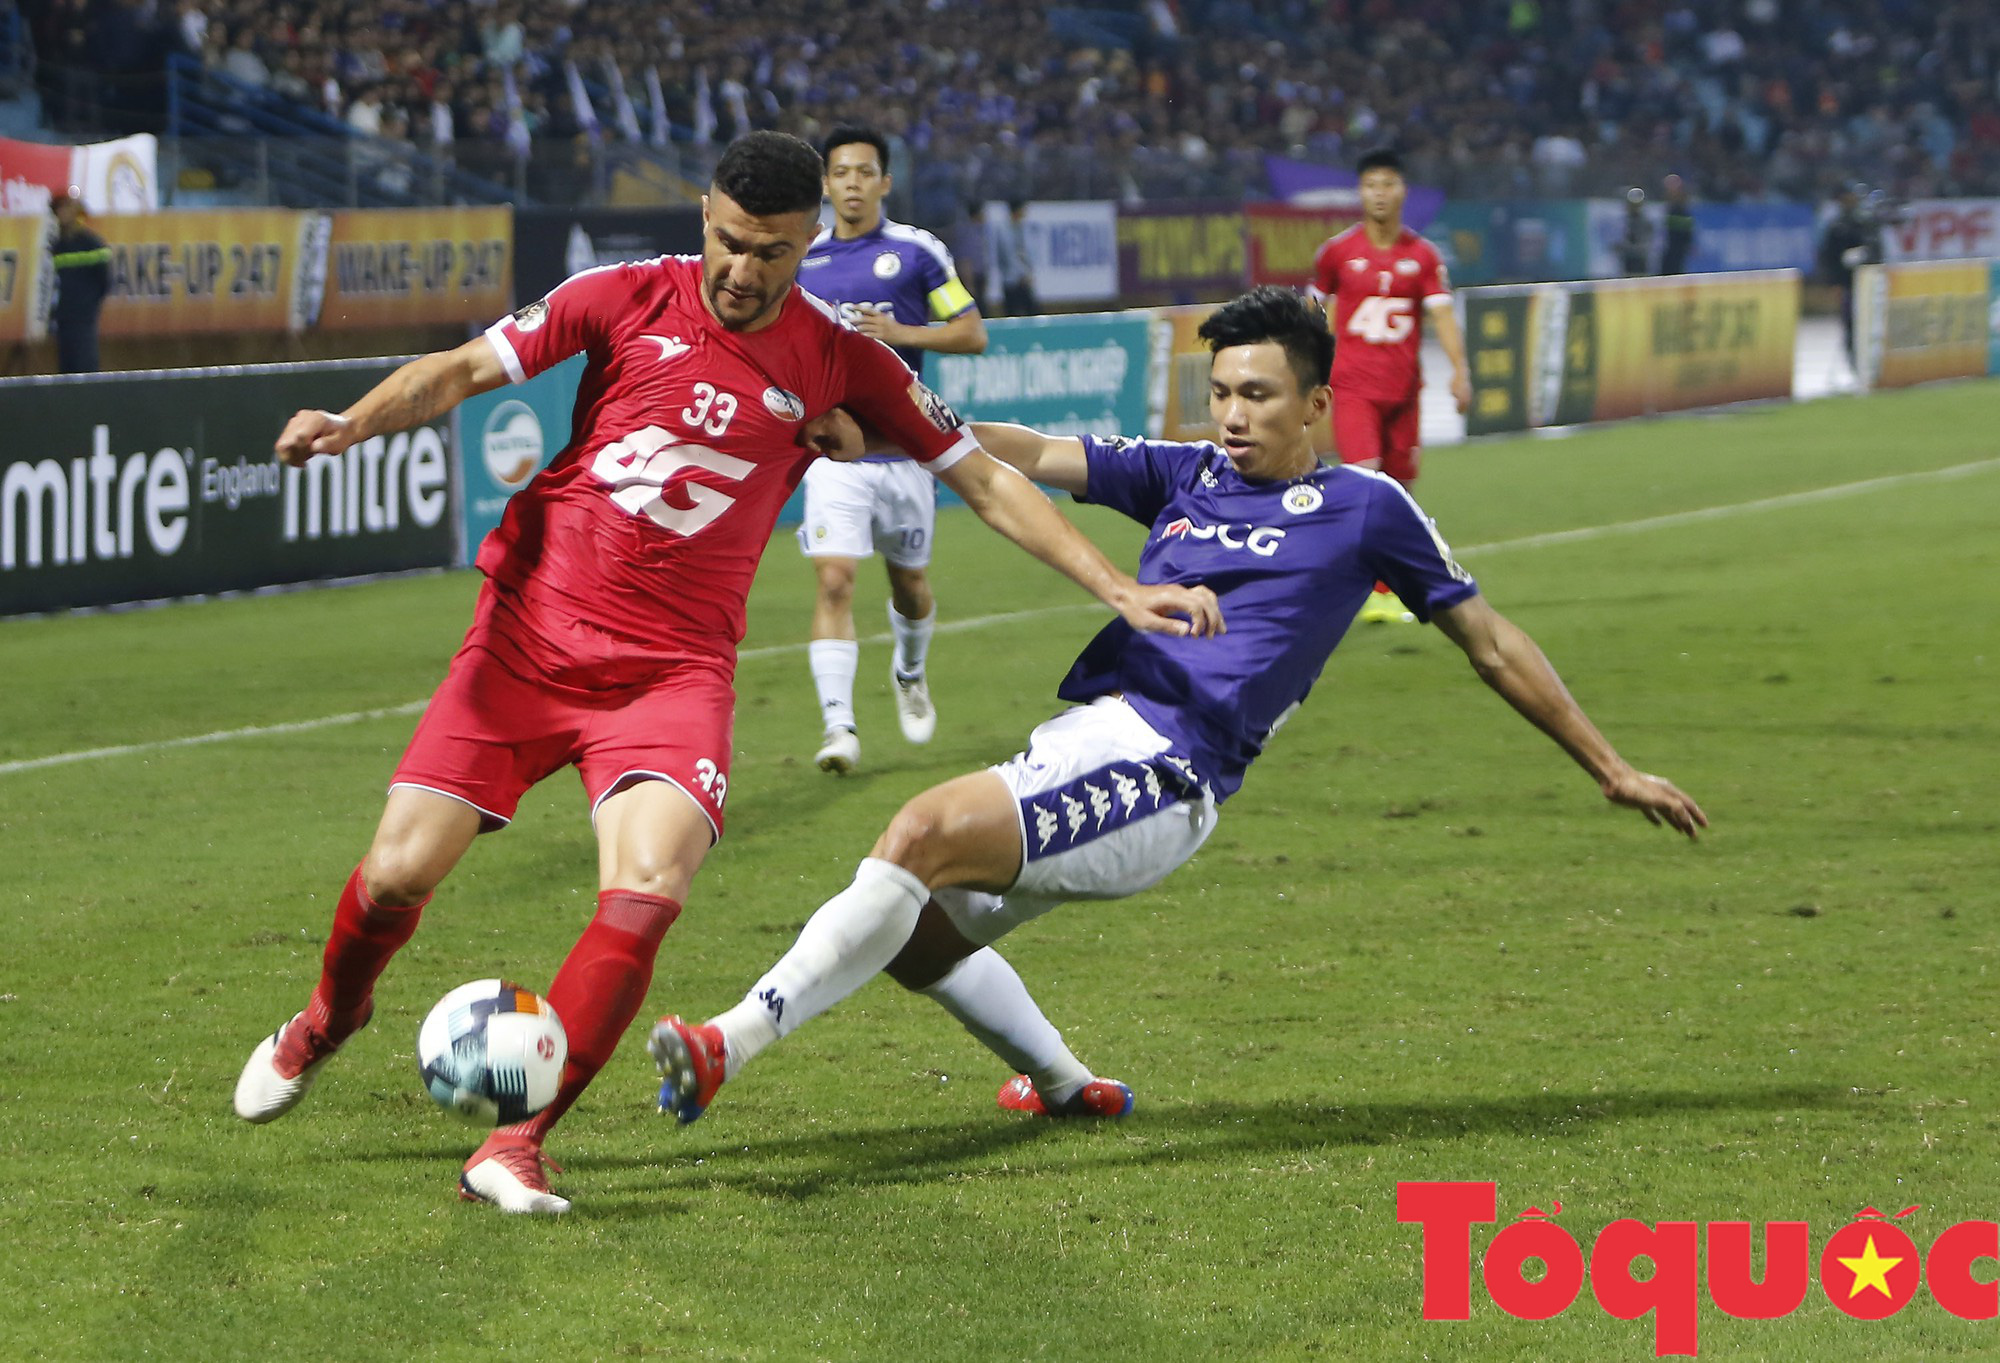 “Derby” Thủ đô: Bóng đã chạm tay tiền đạo Hà Nội FC trước khi bay vào lưới Viettel? - Ảnh 3.